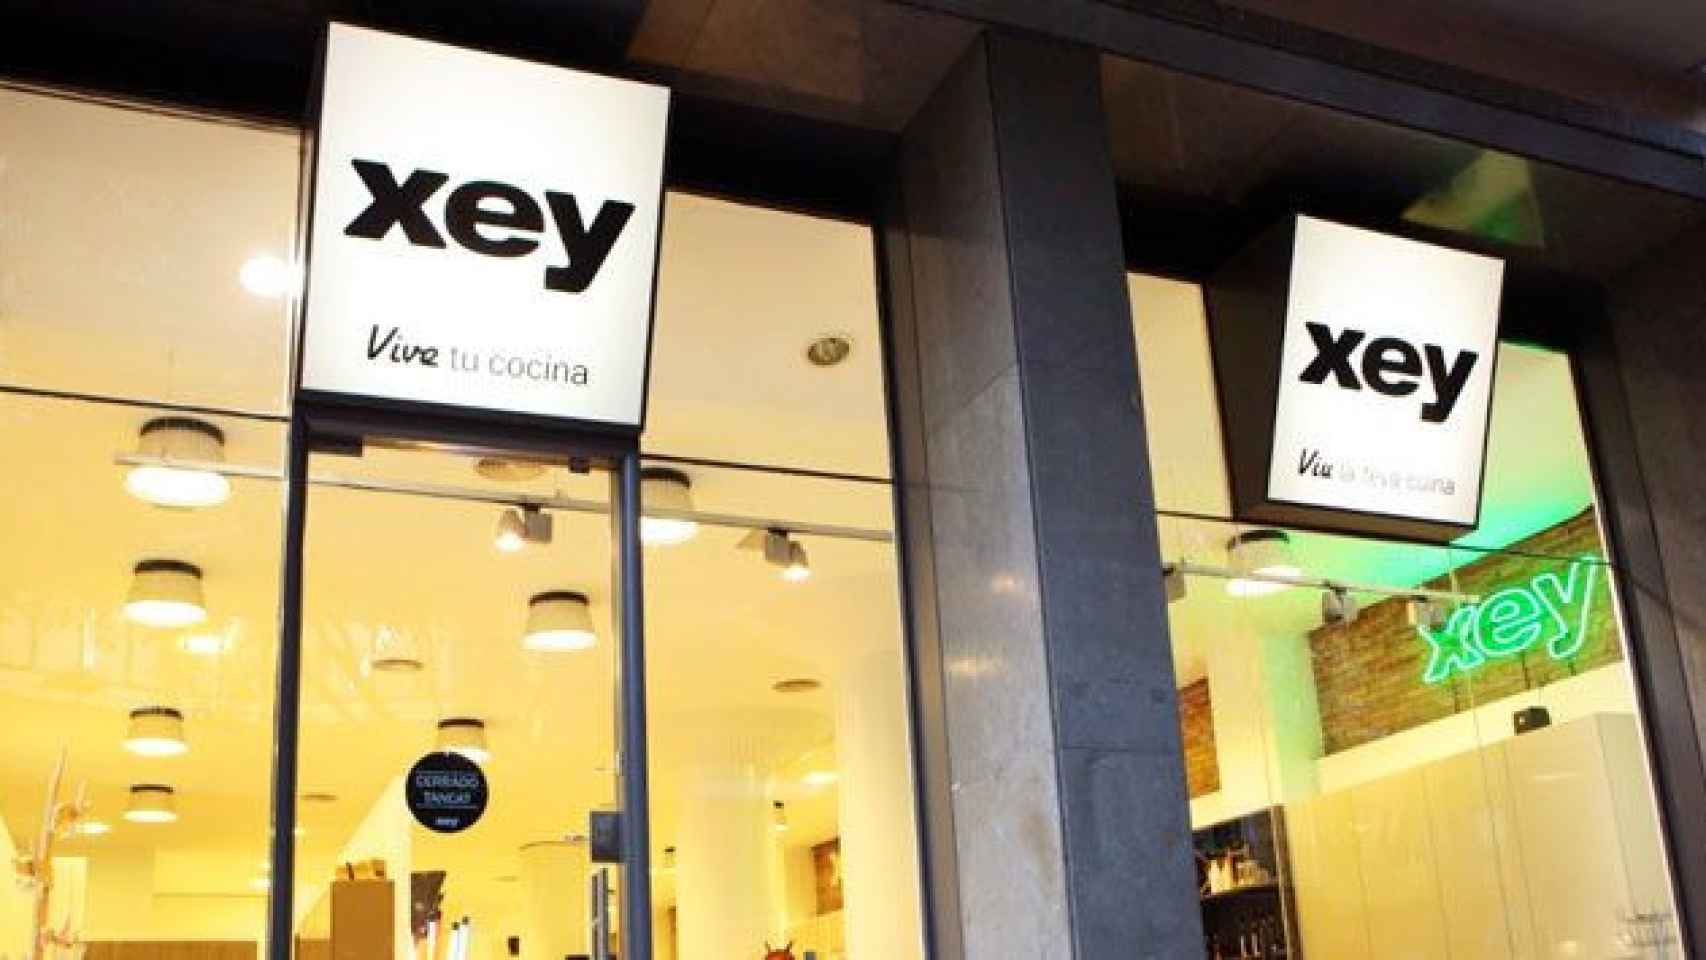 Tienda de muebles Xey en la calle Casanovas de Barcelona / CG